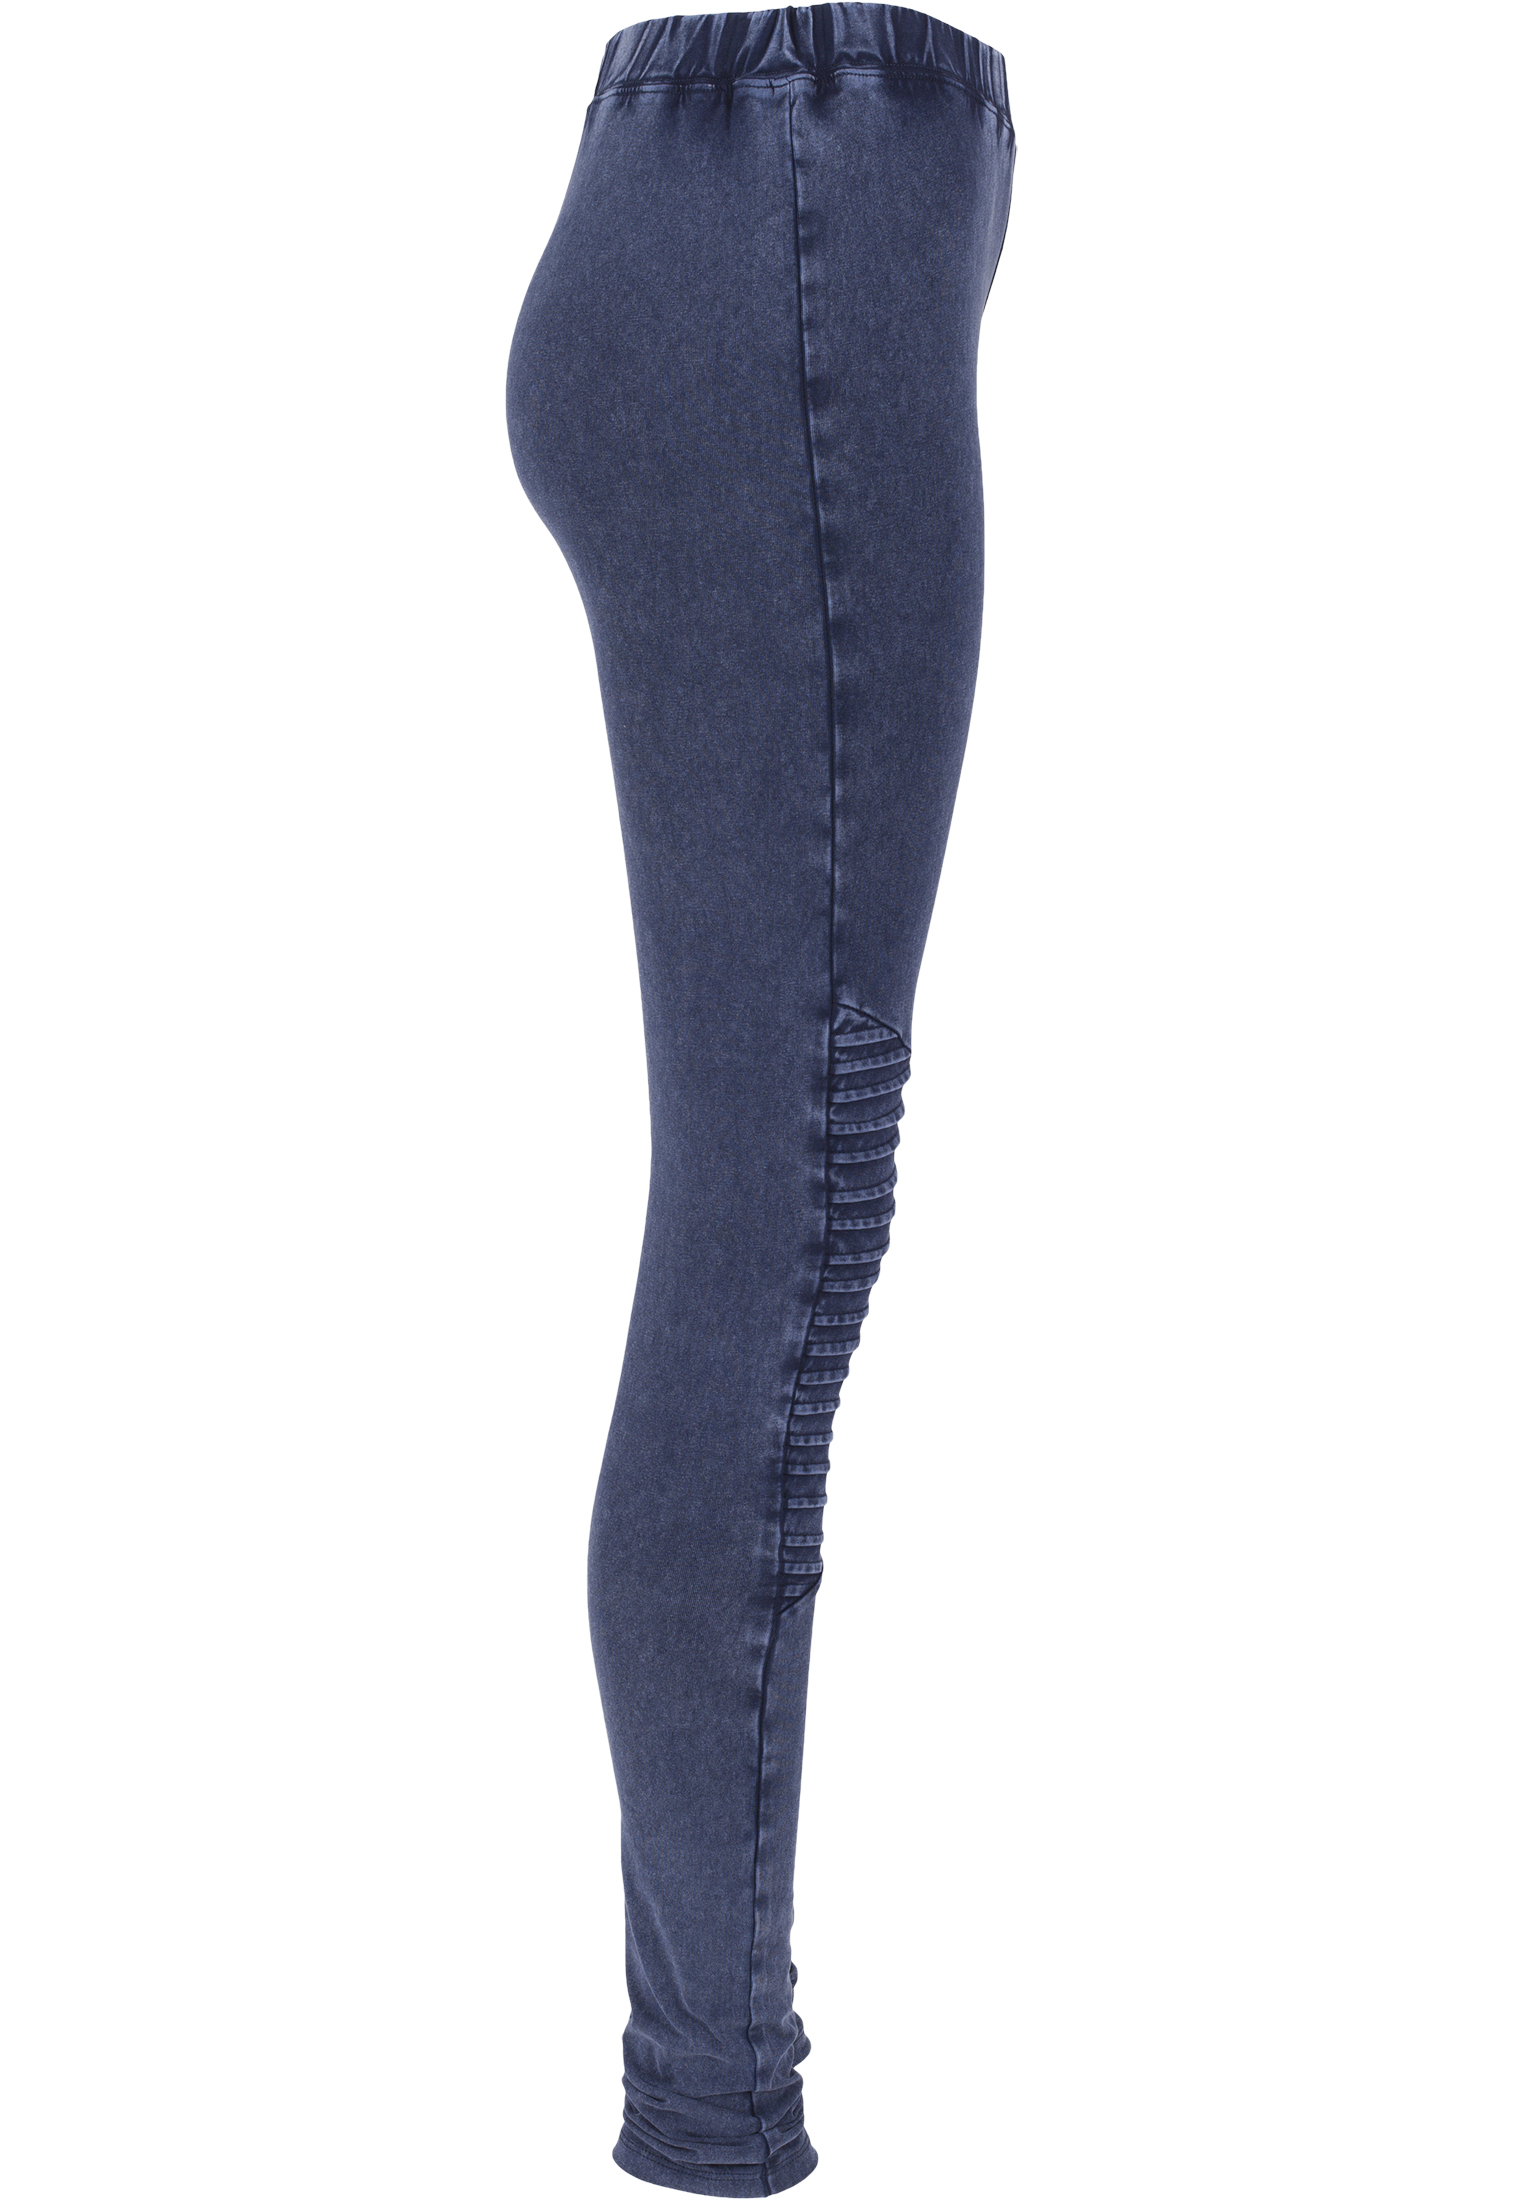 Curvy Ladies Denim Jersey Leggings in Farbe indigo